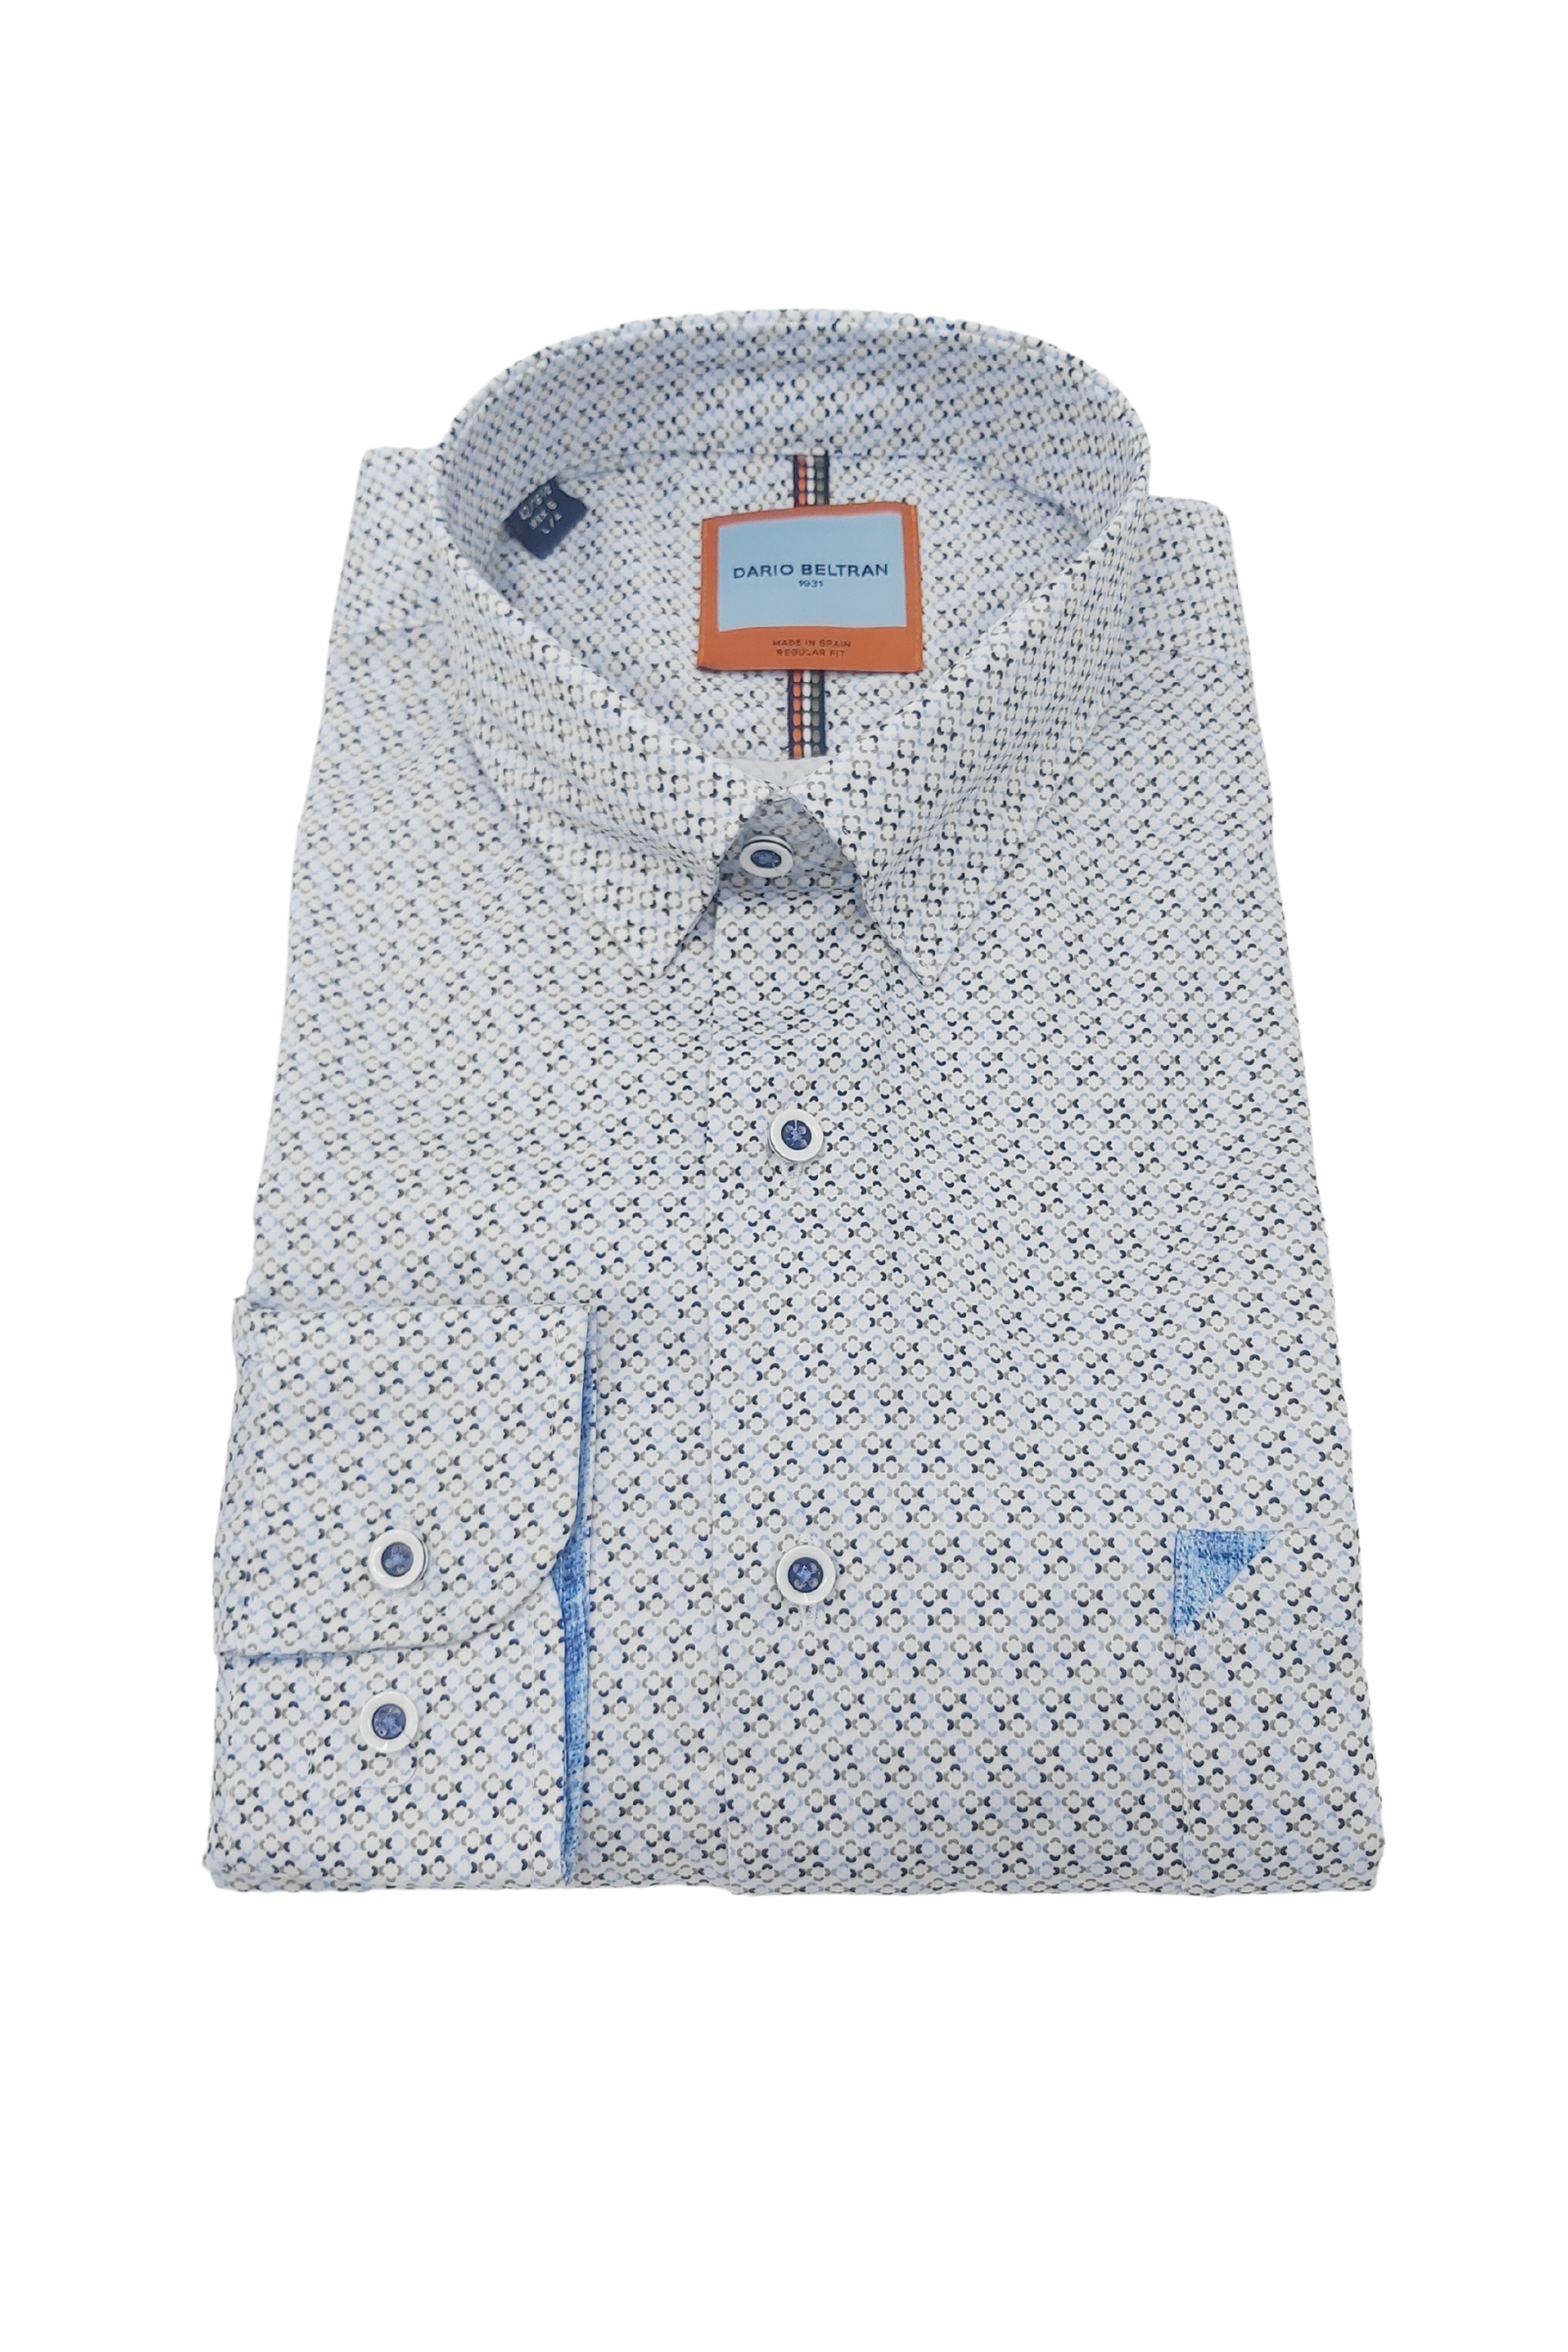 Men's Arnedo - Blue/Brown Circle Pattern Shirt-Front View